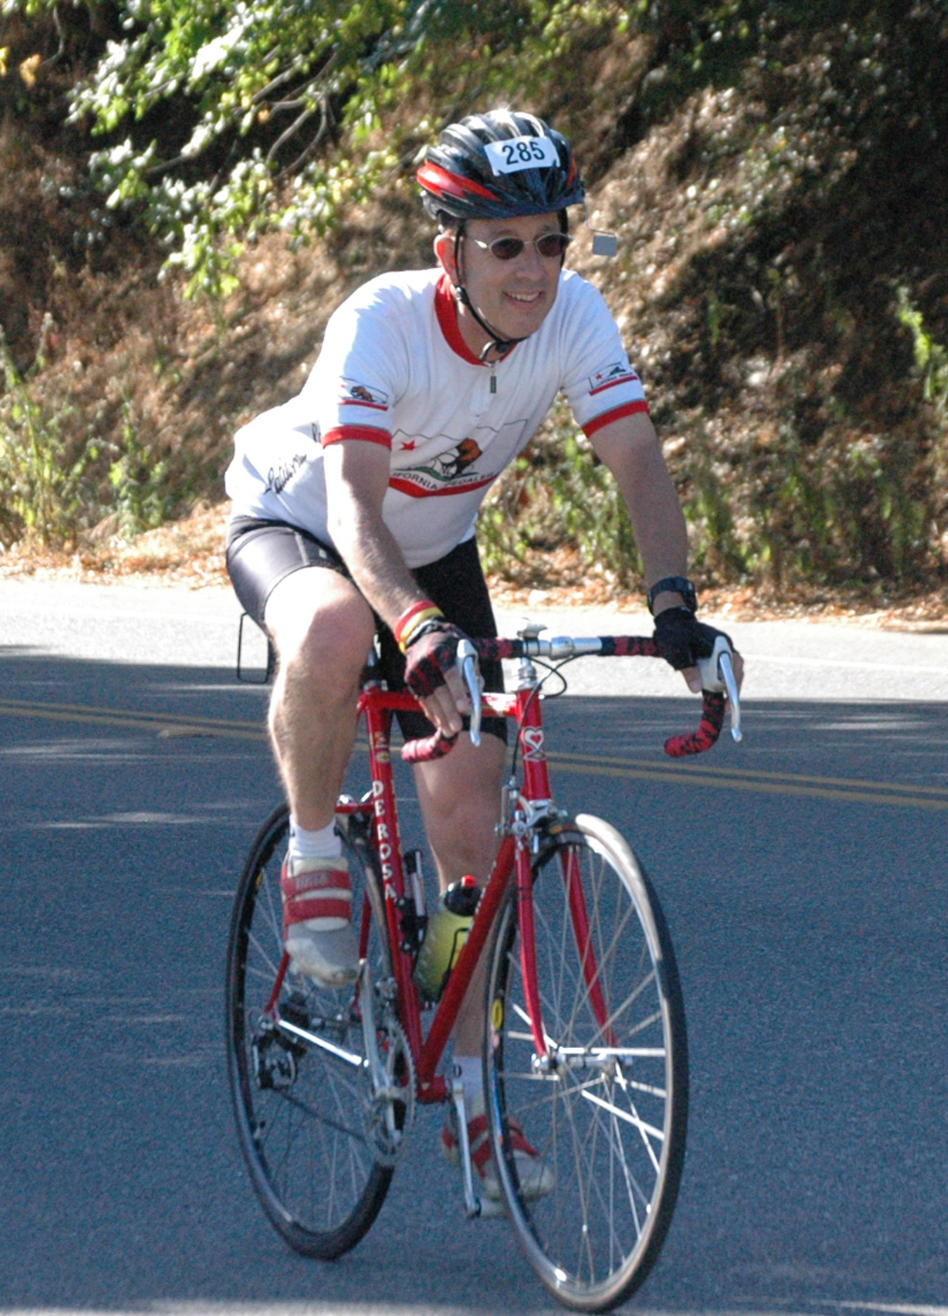 June 13, 2010 during American Diabetes Association Tour de Cure ride at Palo Alto, CA